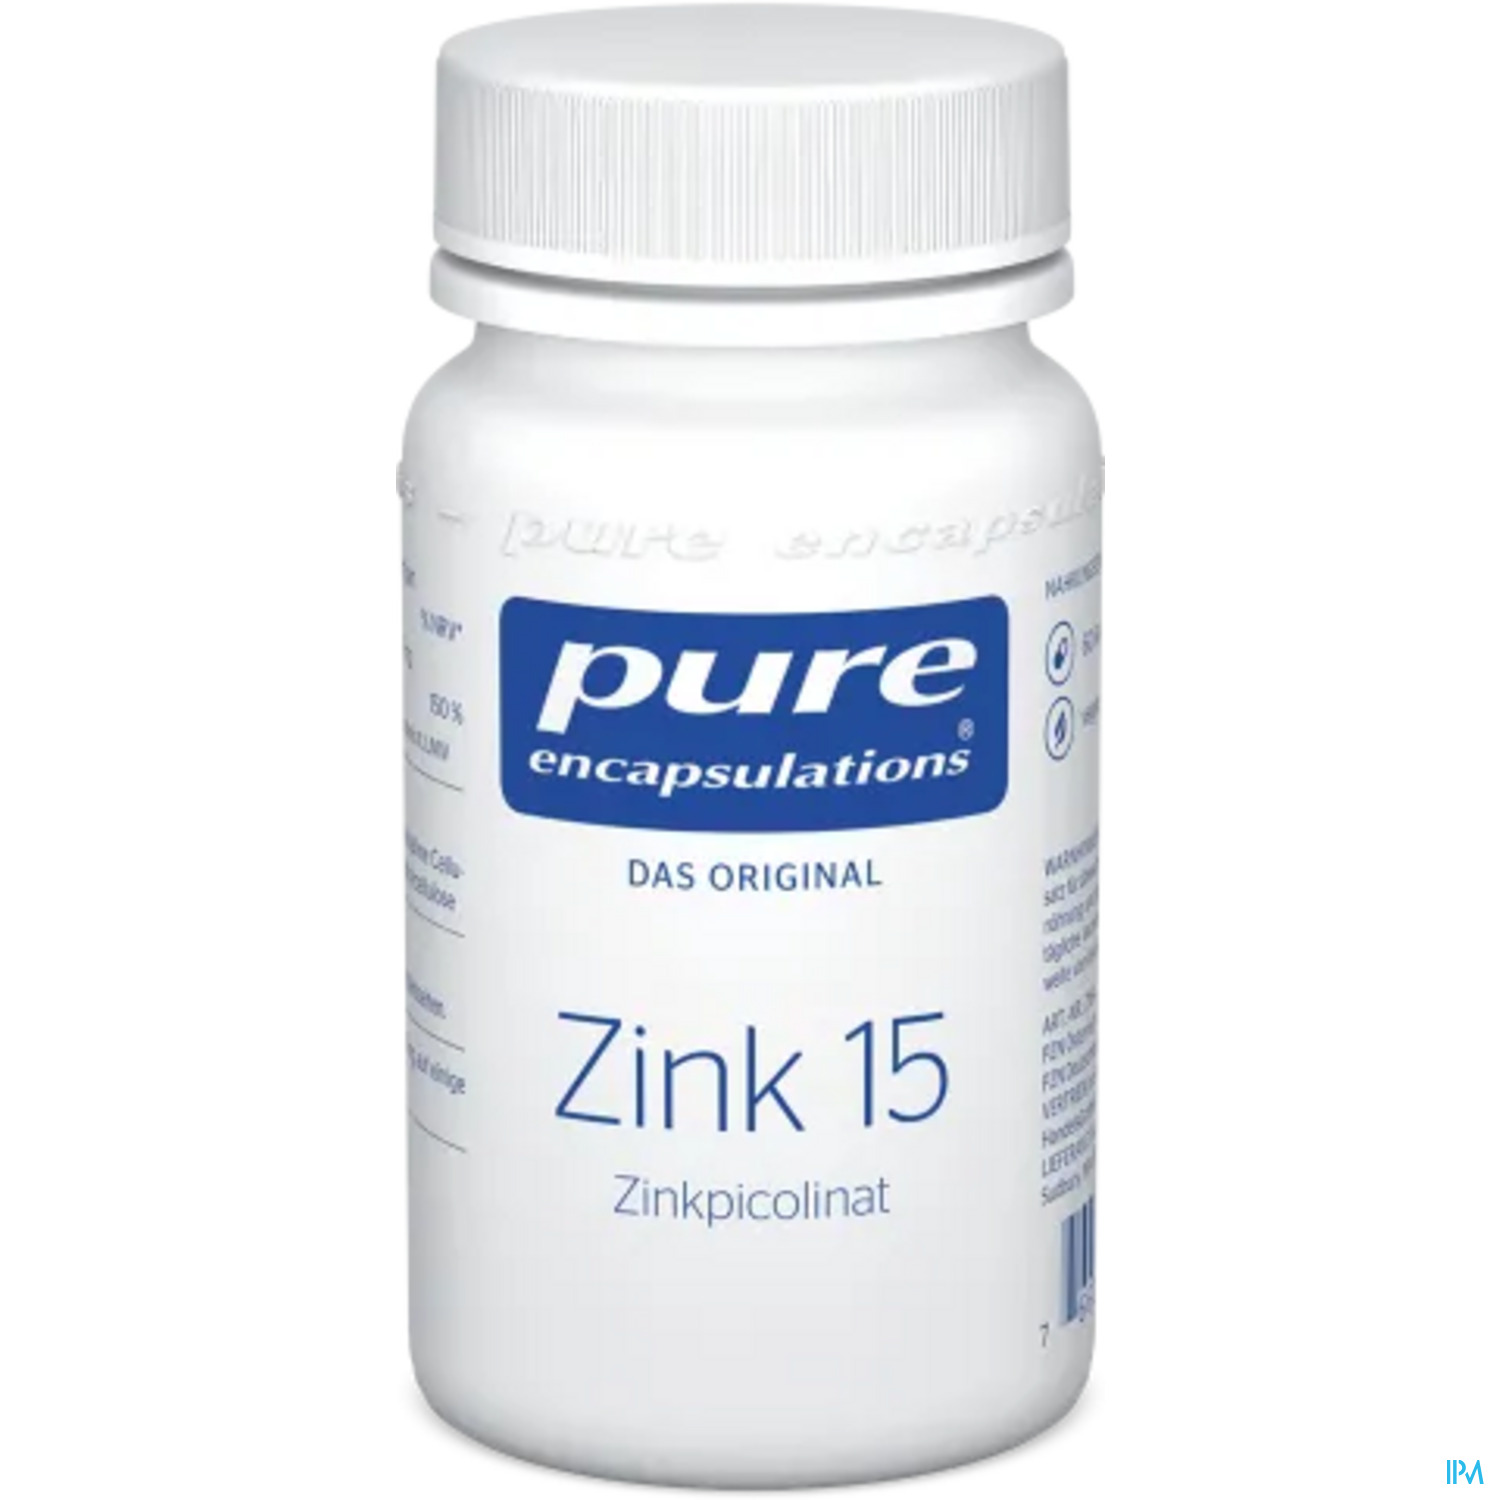 Pure Encapsulations Zink 15 (zinkpicolinat) 60 Kapseln